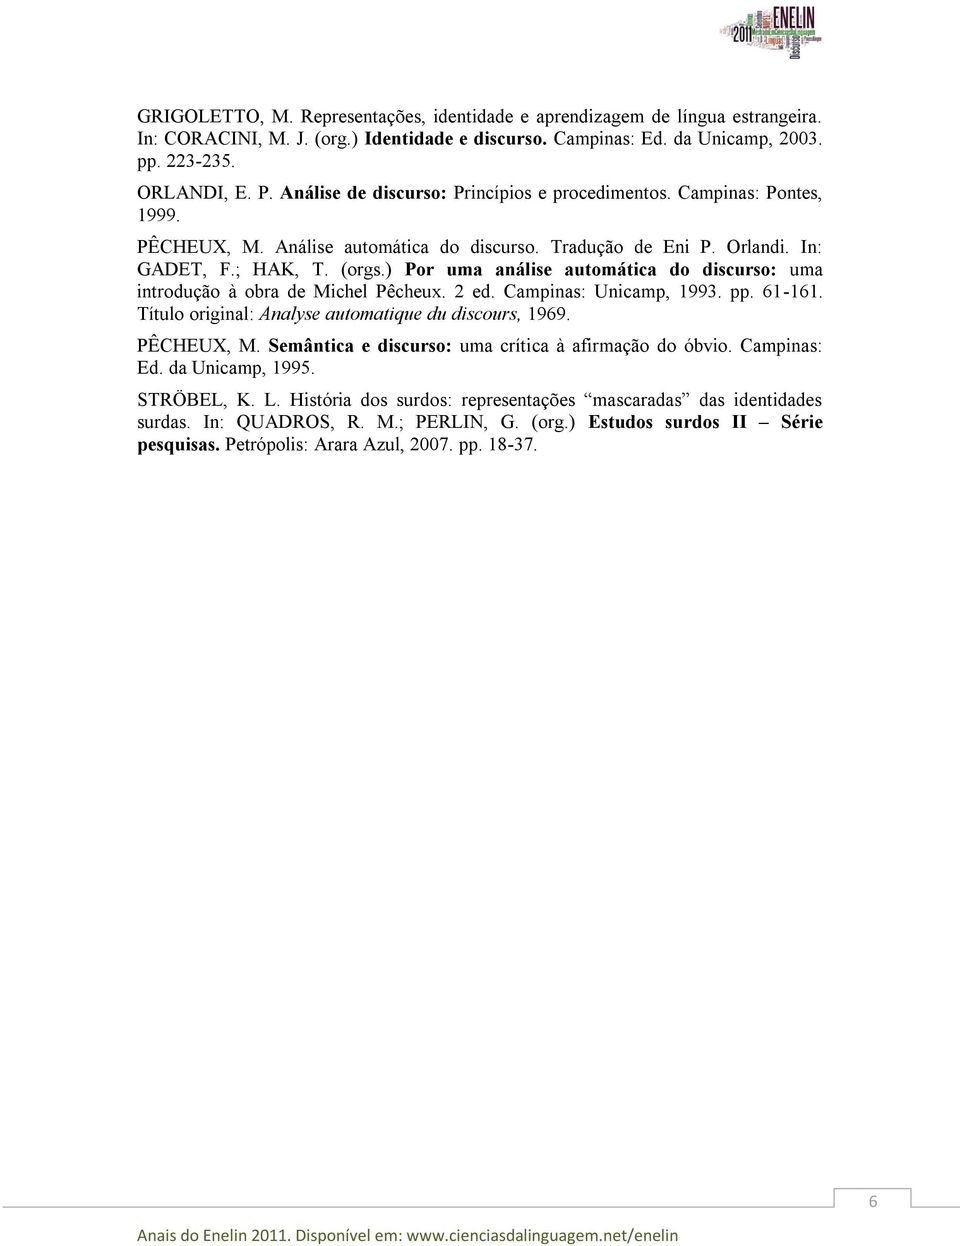 ) Por uma análise automática do discurso: uma introdução à obra de Michel Pêcheux. 2 ed. Campinas: Unicamp, 1993. pp. 61-161. Título original: Analyse automatique du discours, 1969. PÊCHEUX, M.